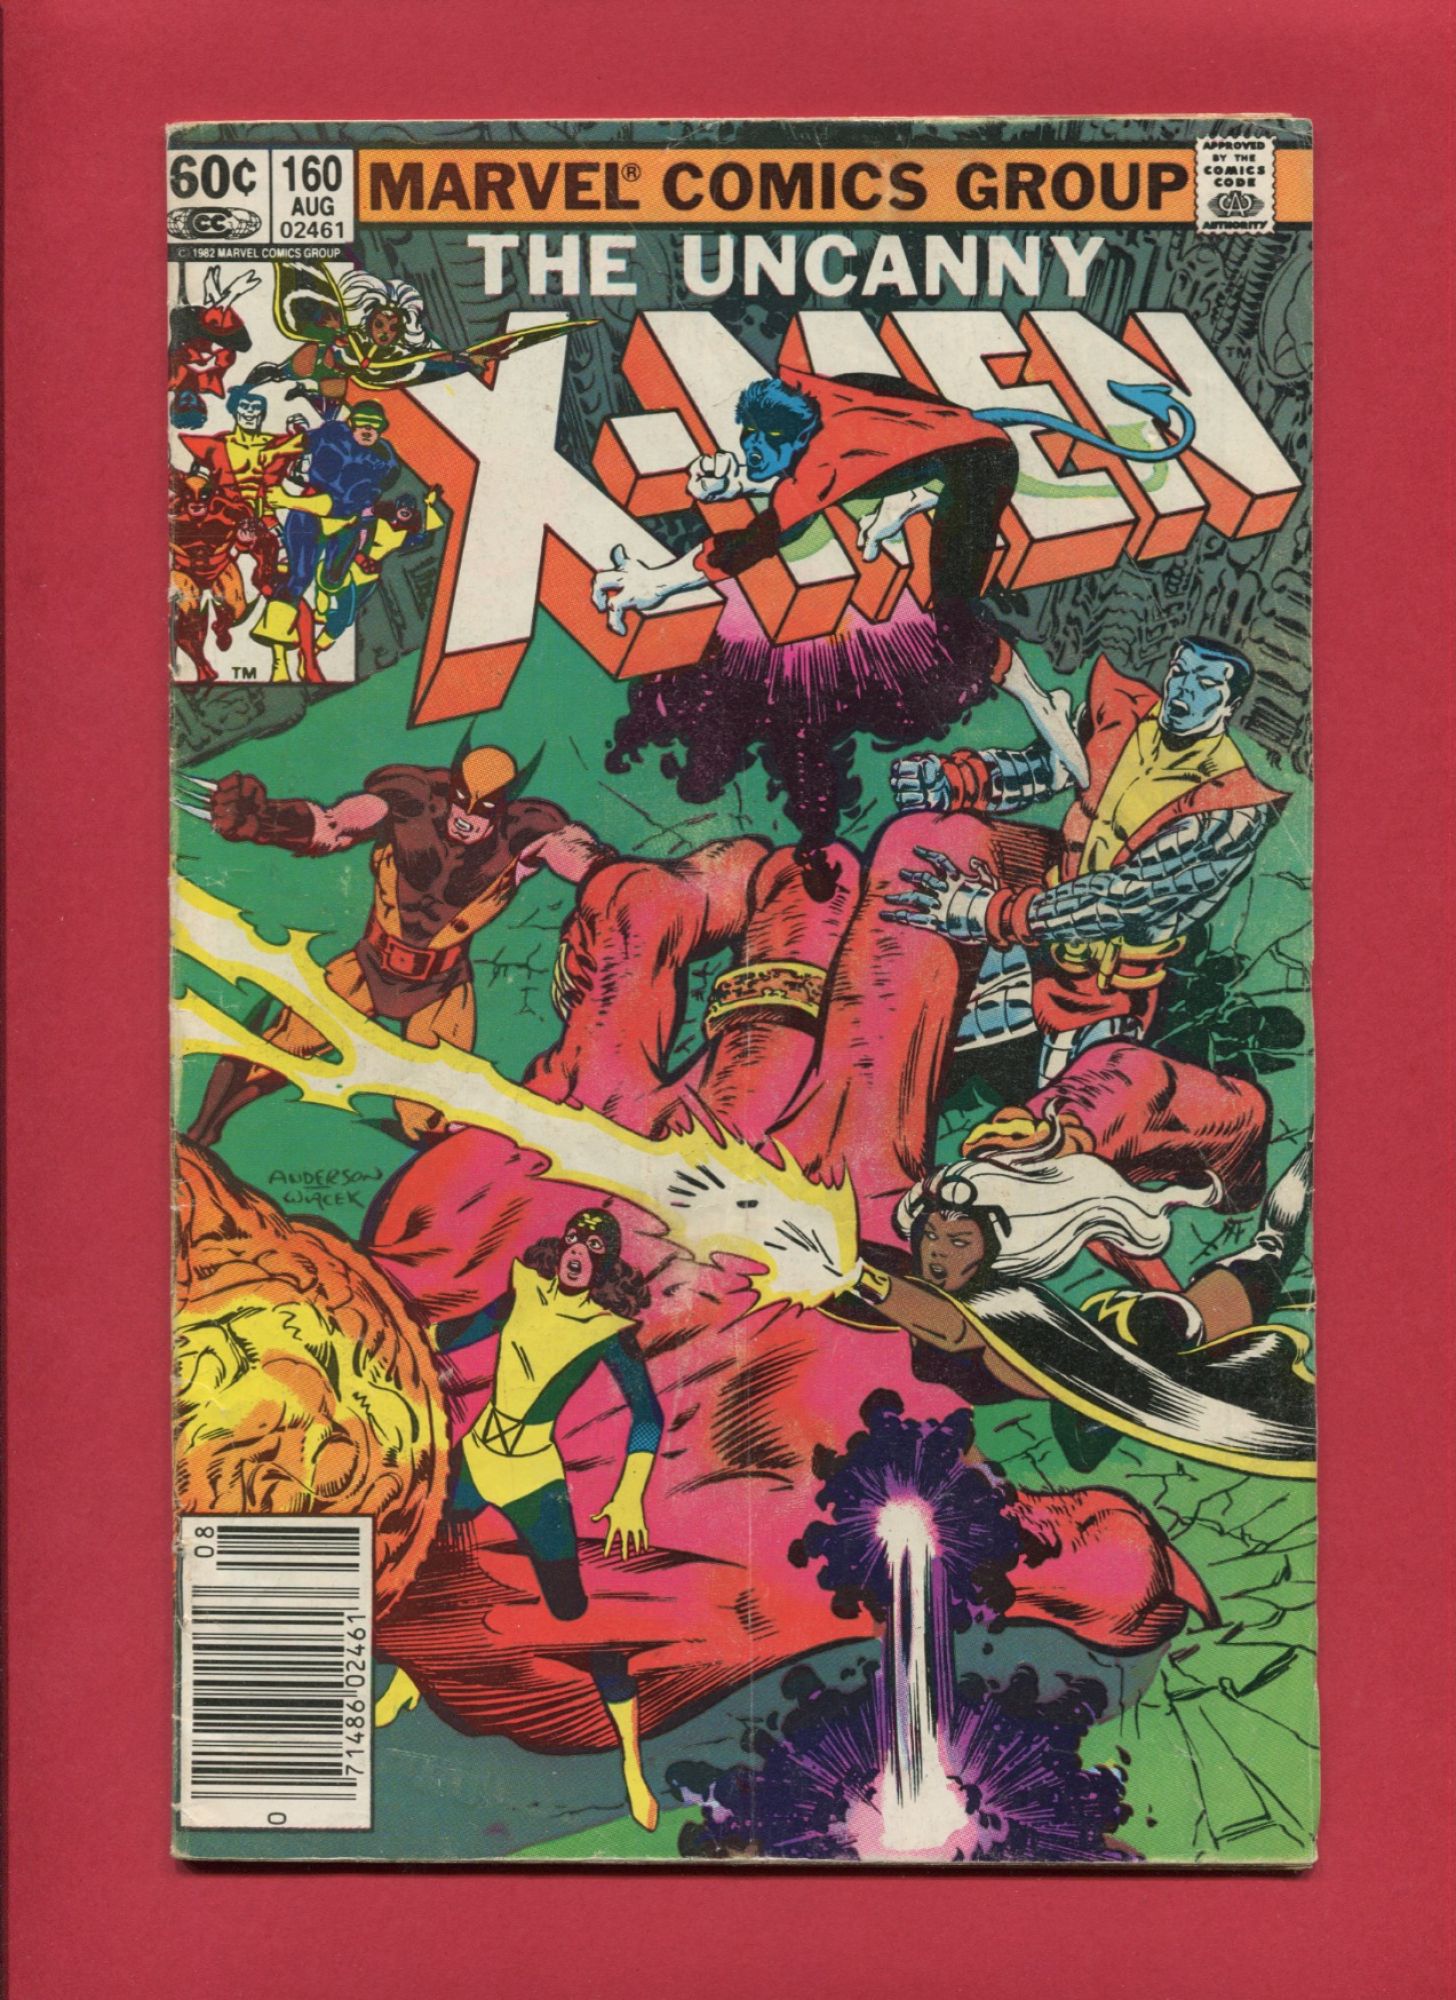 Uncanny X-Men #160, Aug 1982, 4.0 VG